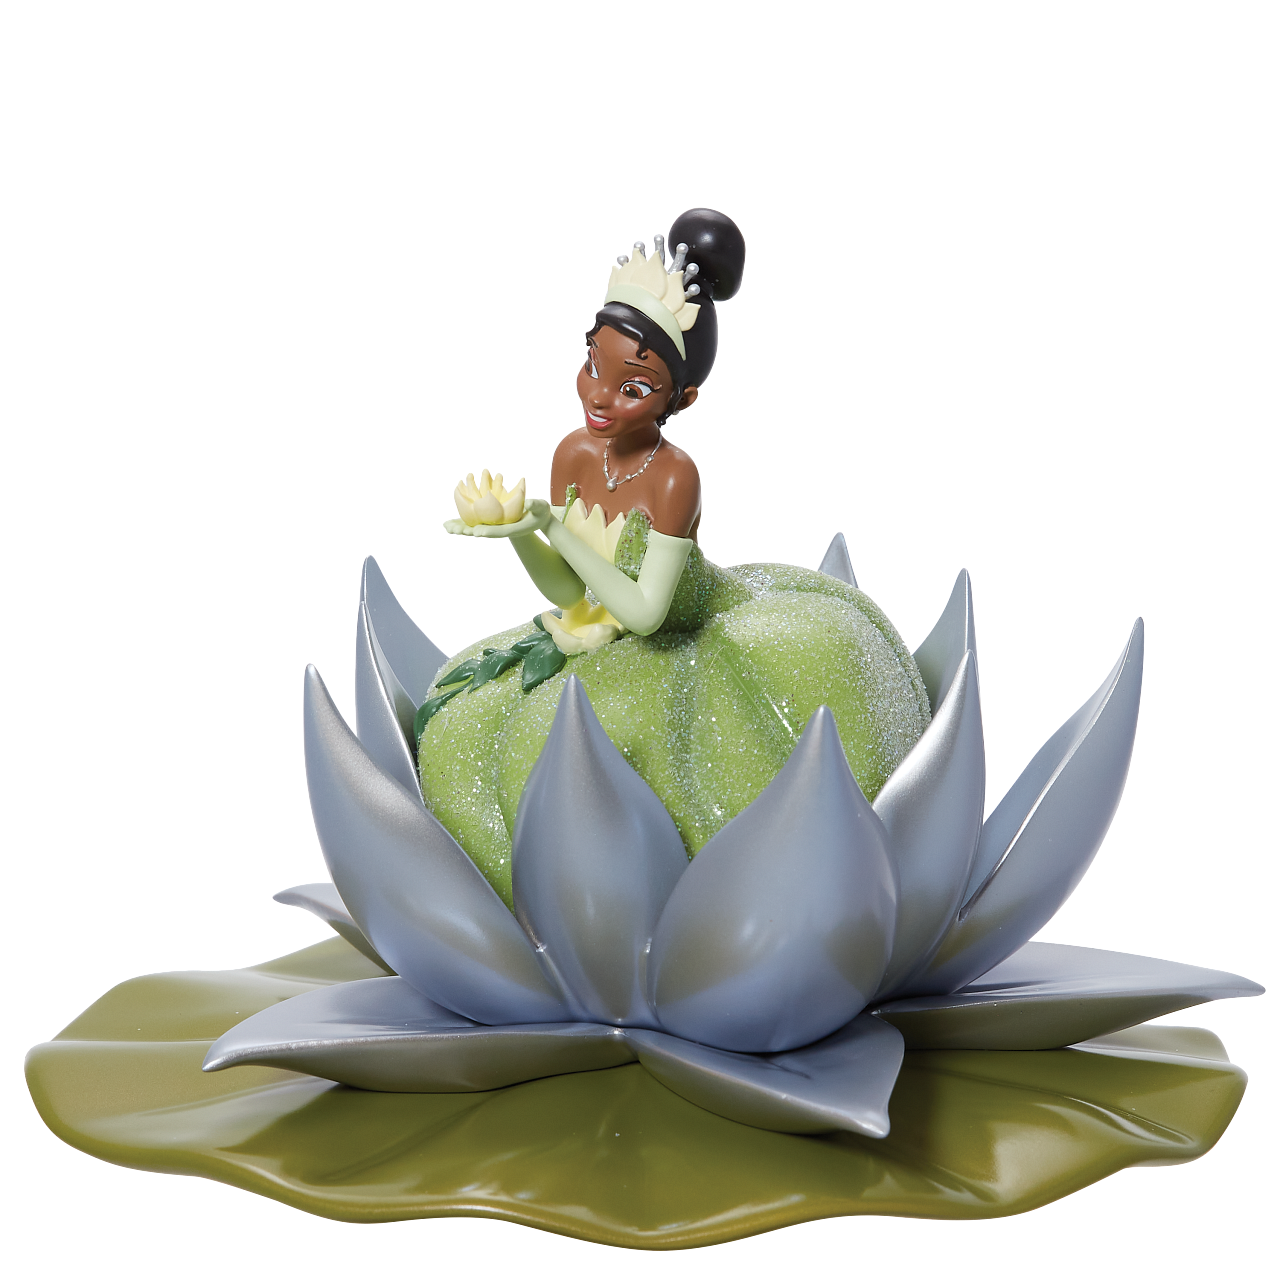 【ディズニー100周年記念】Princess Tiana ディズニーショーケース【enesco】